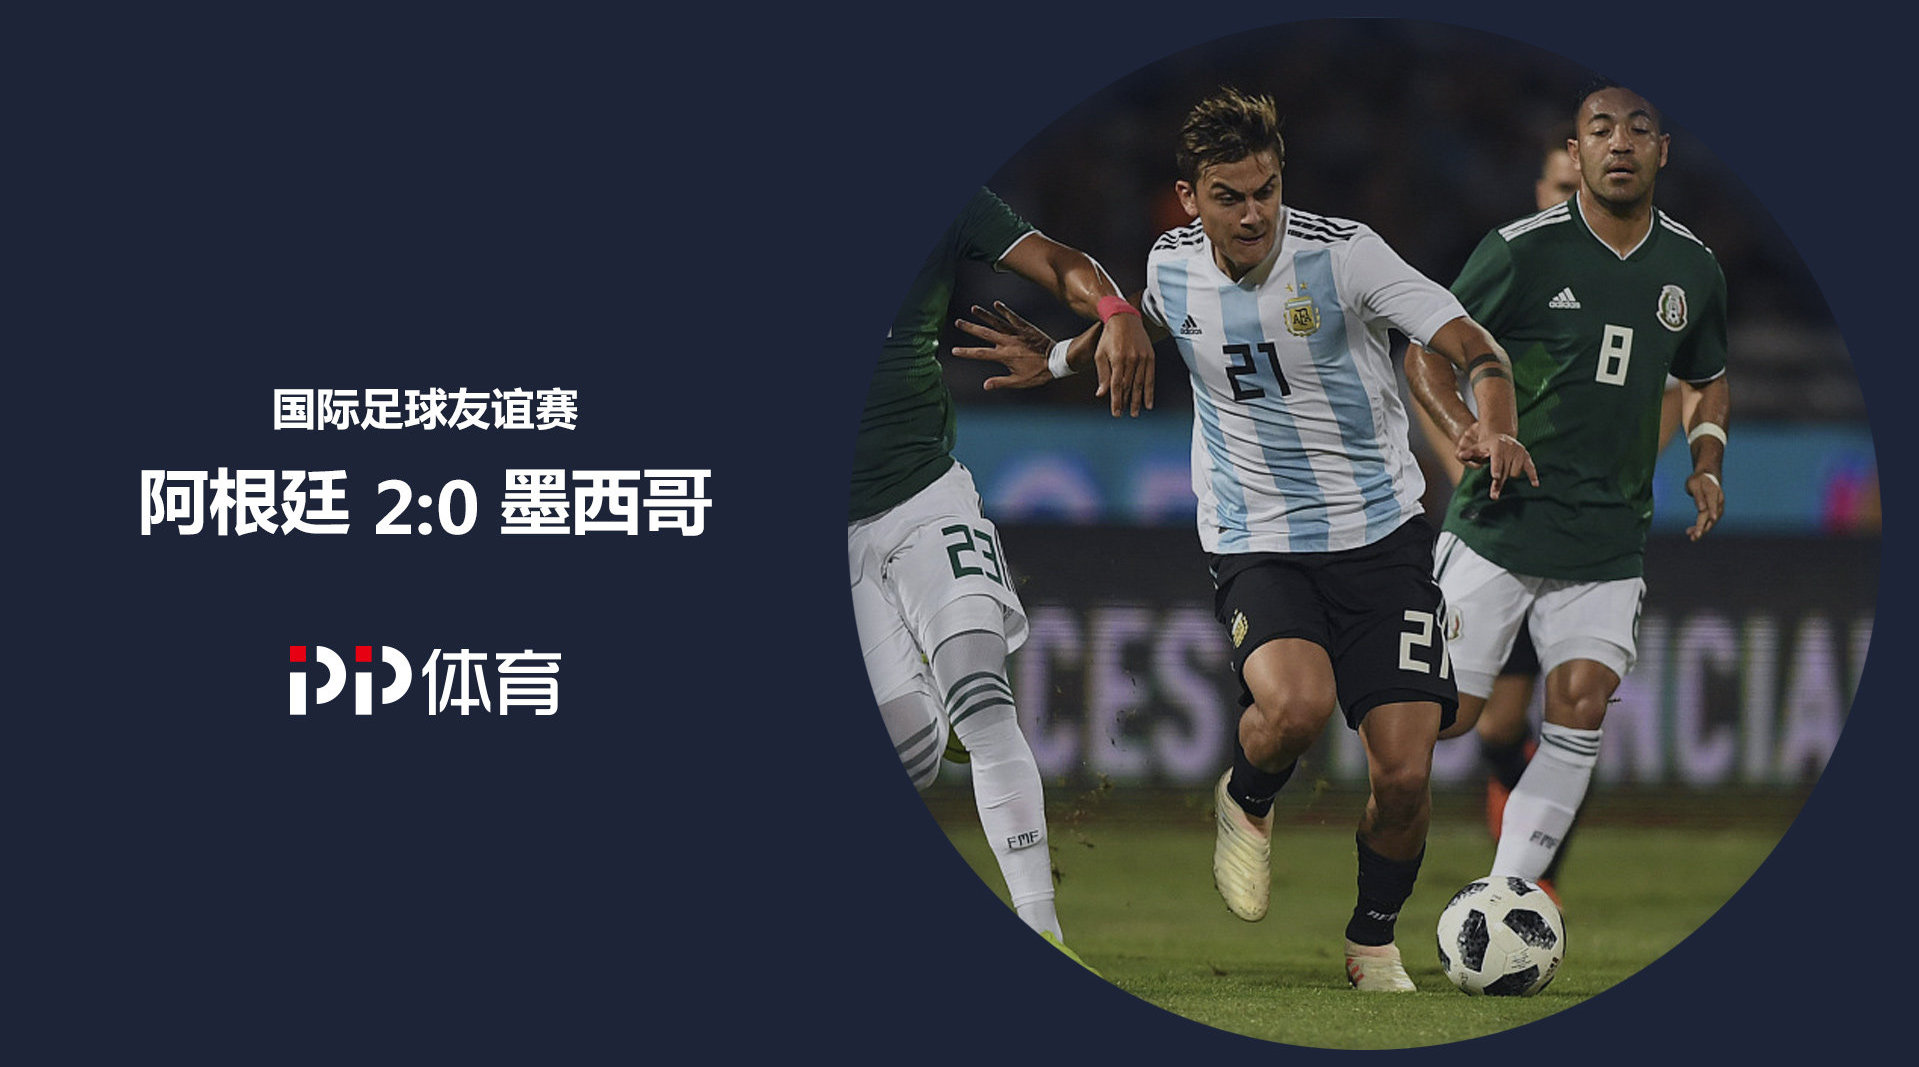 【2018 中国男排 国际友谊赛第一场阿根廷vs中